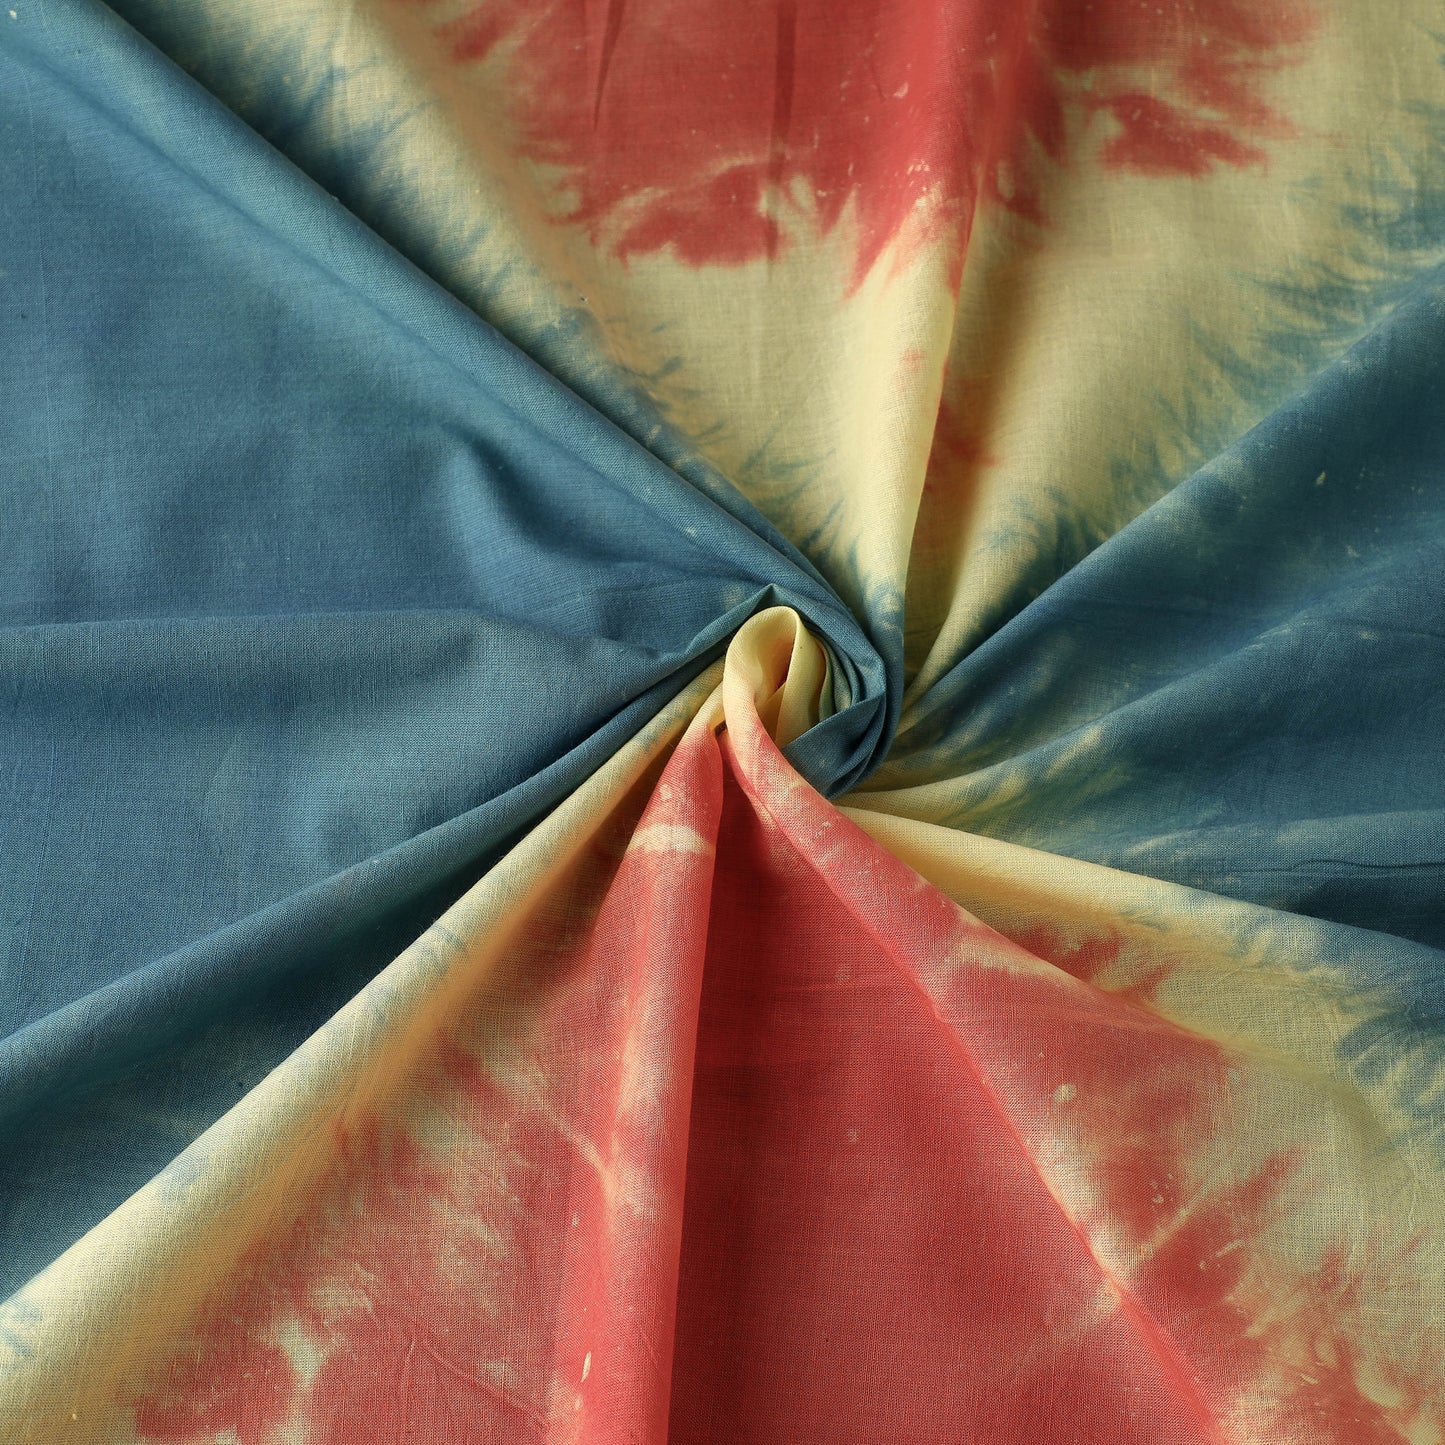 Multicolor - Shibori Tie-Dye Precut Cotton Fabric (2.5 meter)